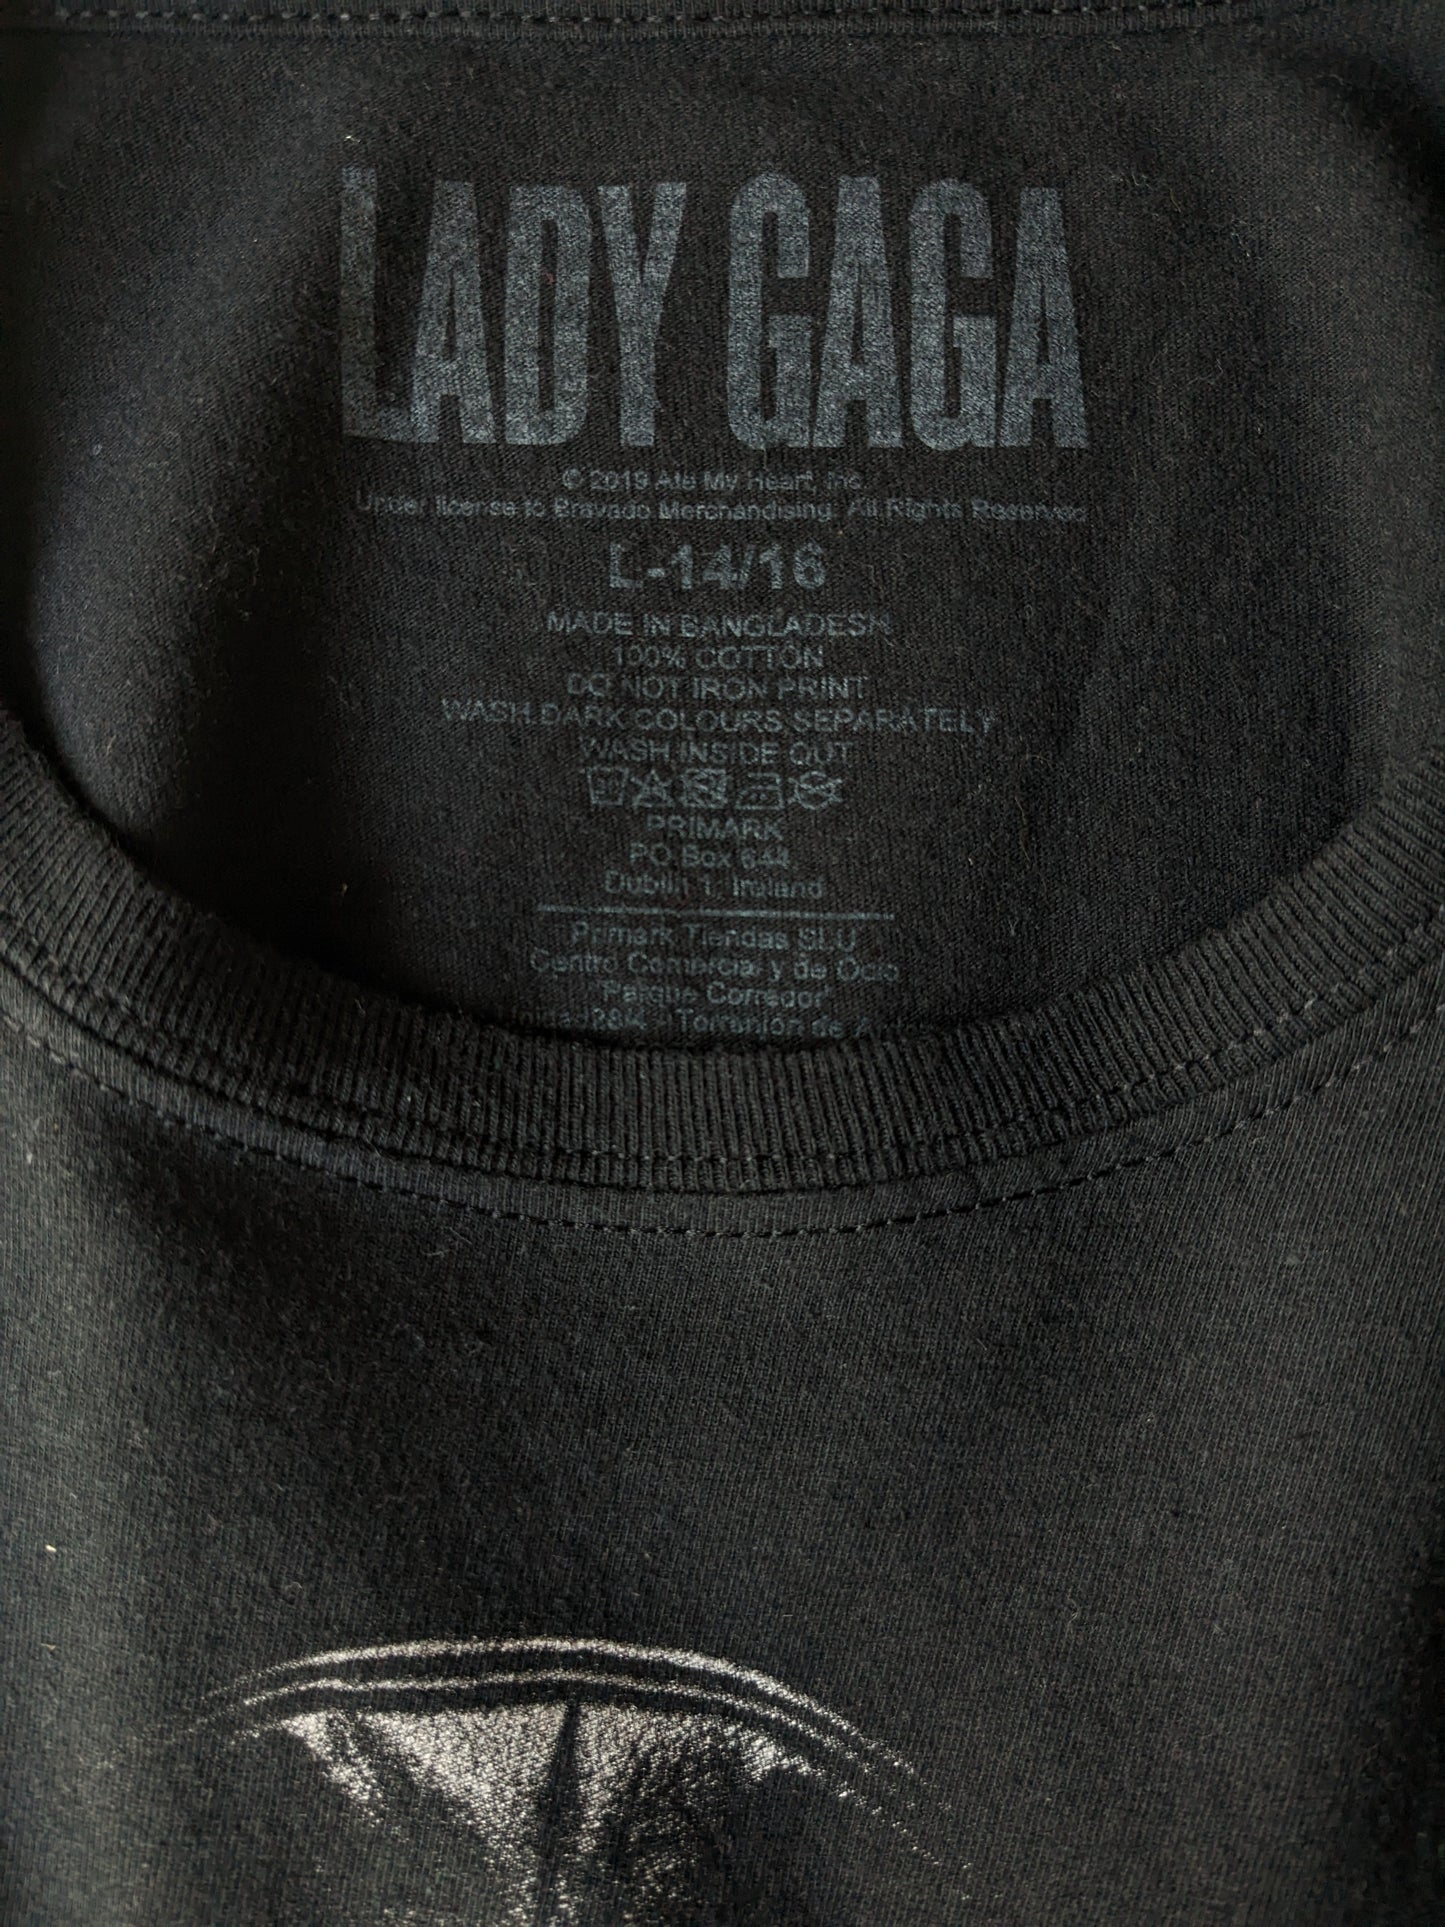 Camisa de Lady Gaga. Negro con impresión. Tamaño l niños / s adultos.